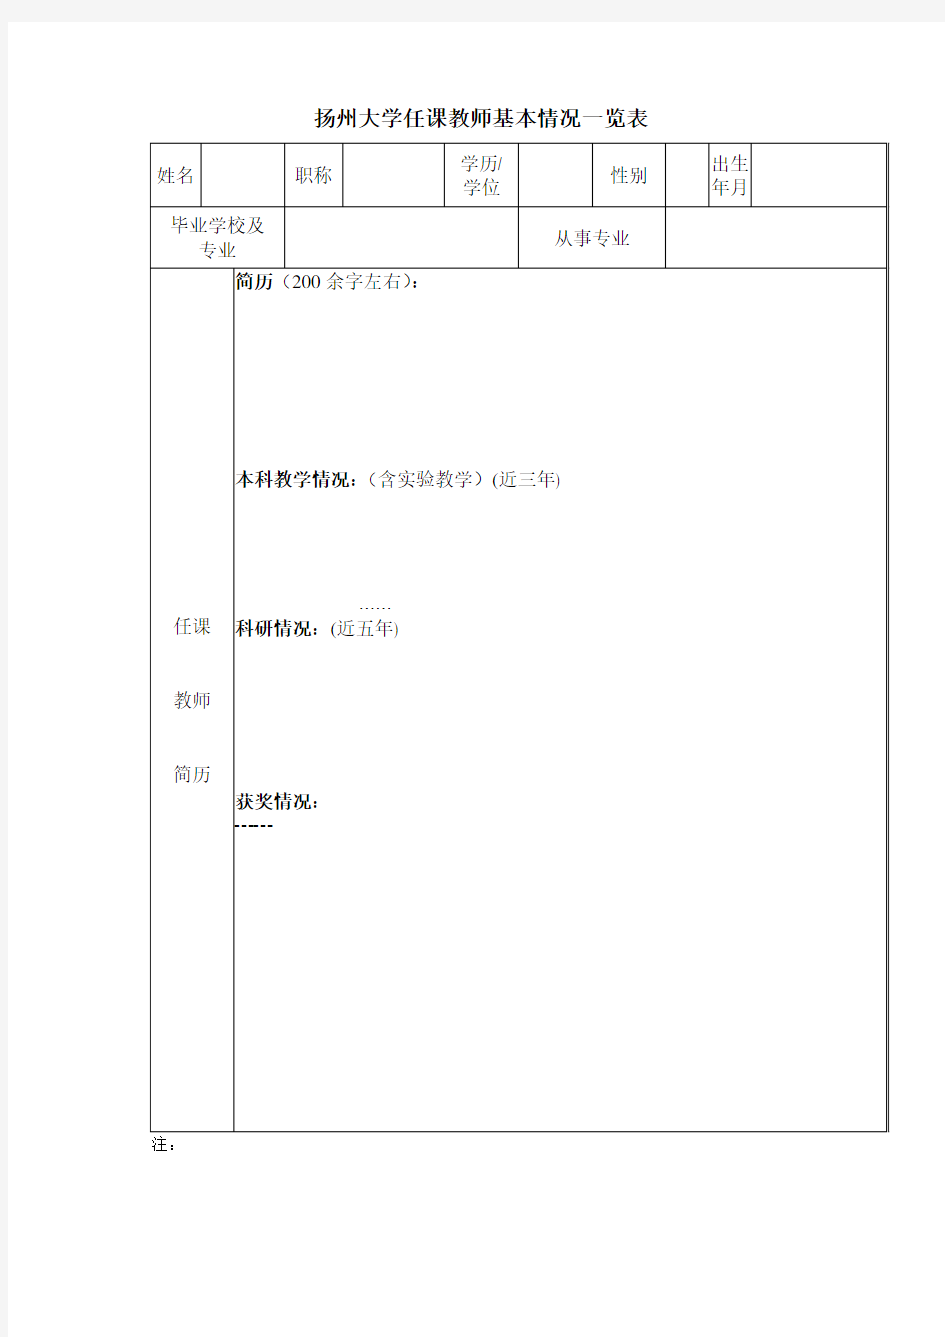 扬州大学任课教师基本情况一览表